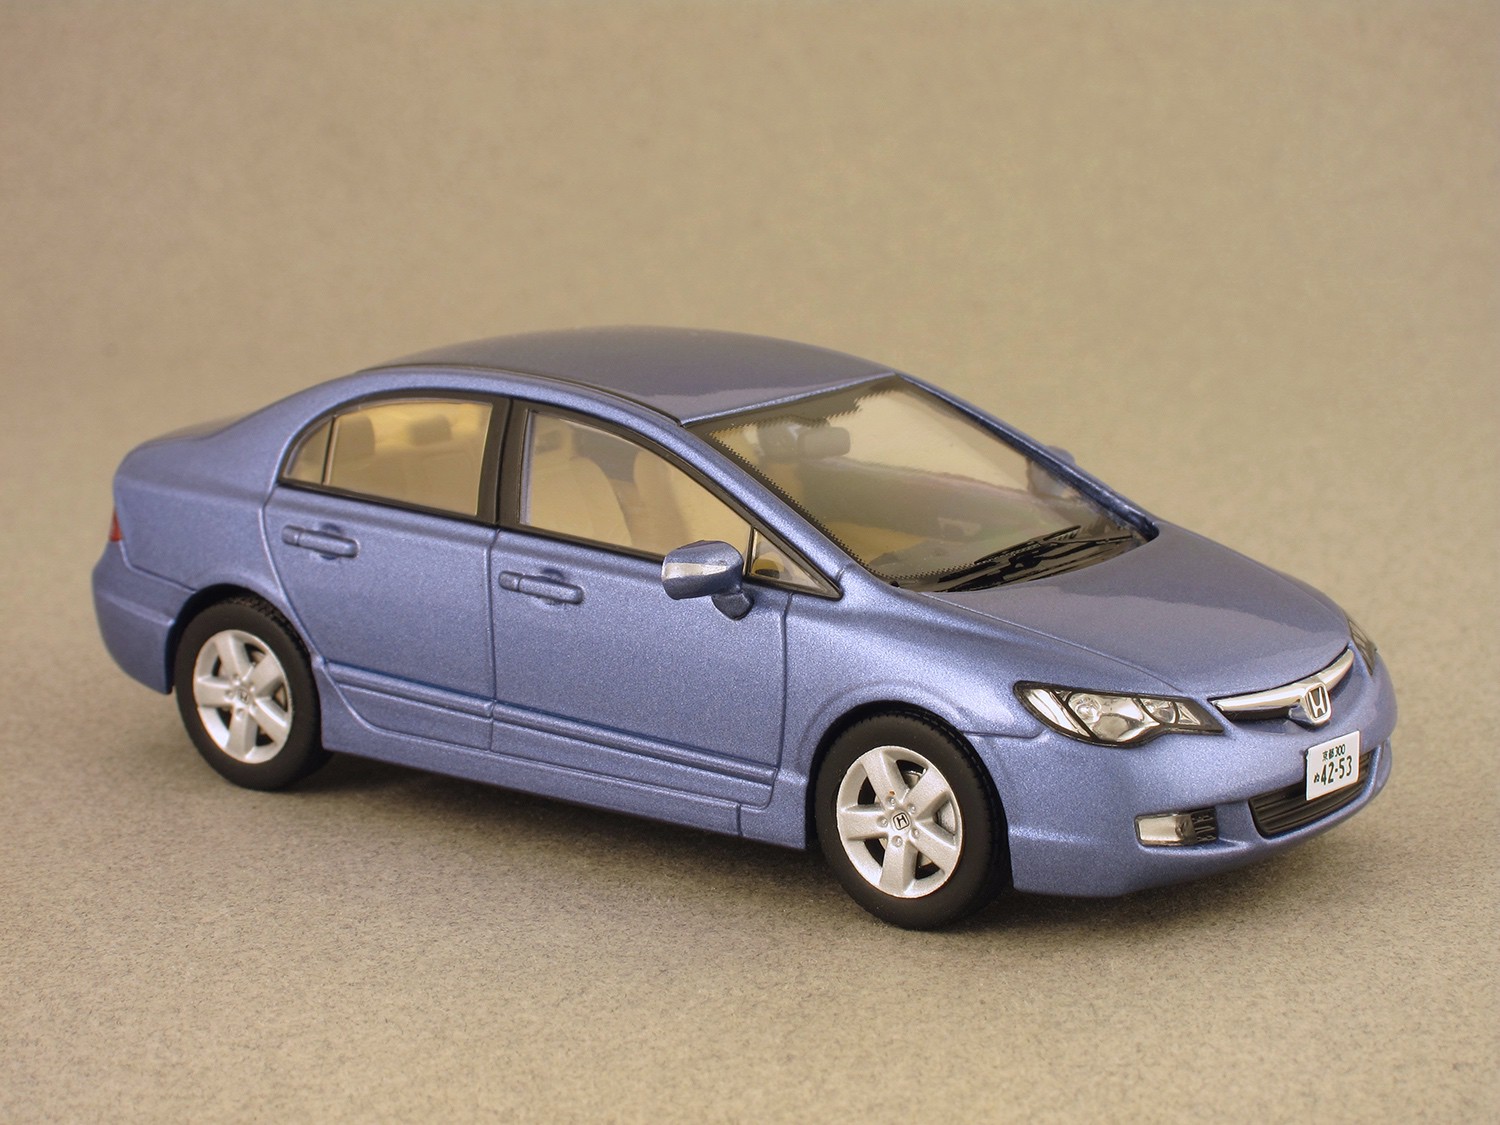 Honda Civic 2006 (Premium X) 1/43e